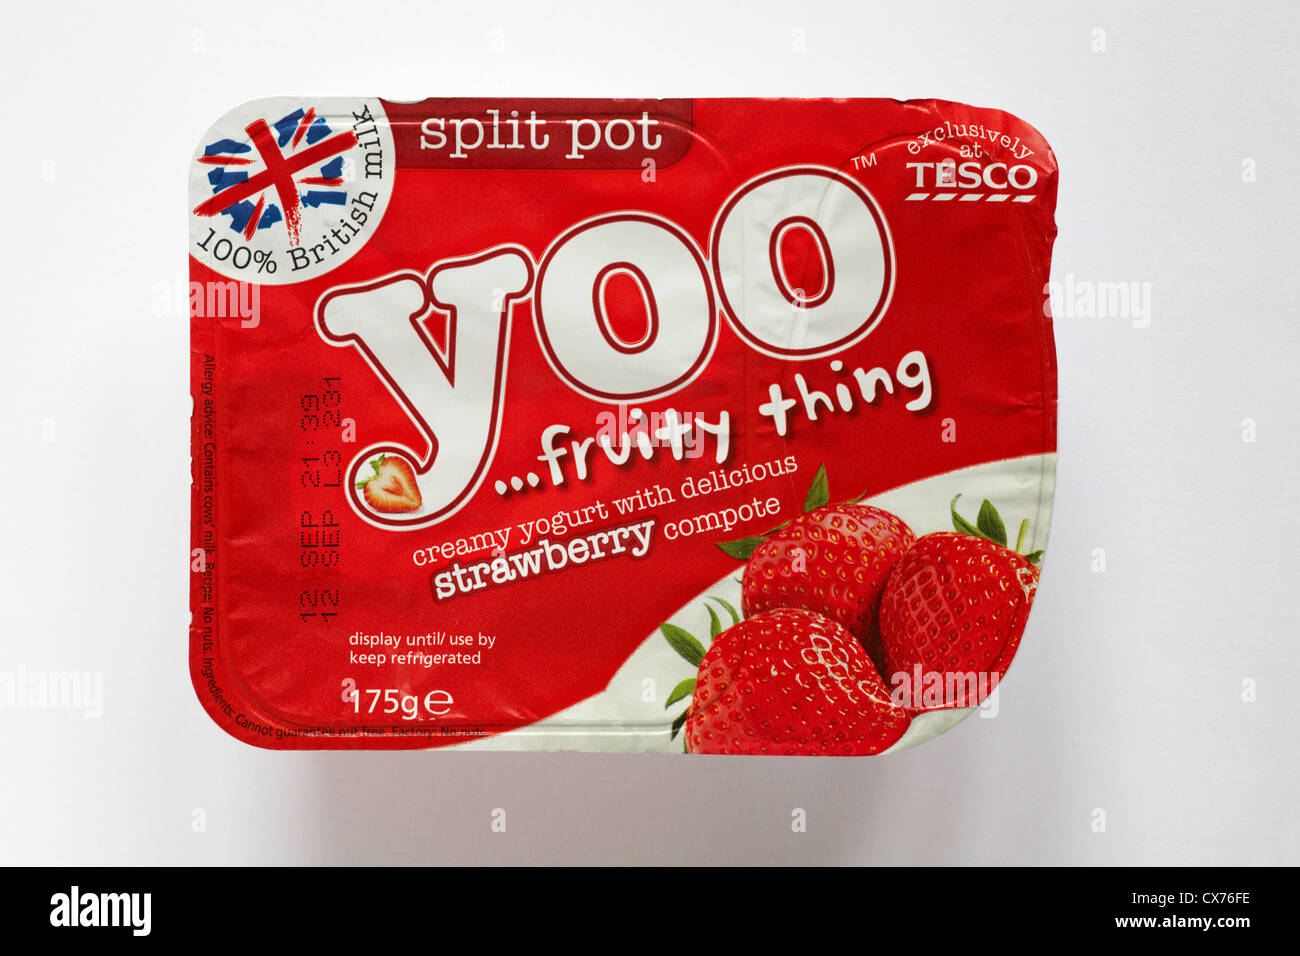 Split pot di Yoo fruttato cosa yogurt cremoso con fragola deliziosa composta esclusivamente a Tesco isolati su sfondo bianco Foto Stock